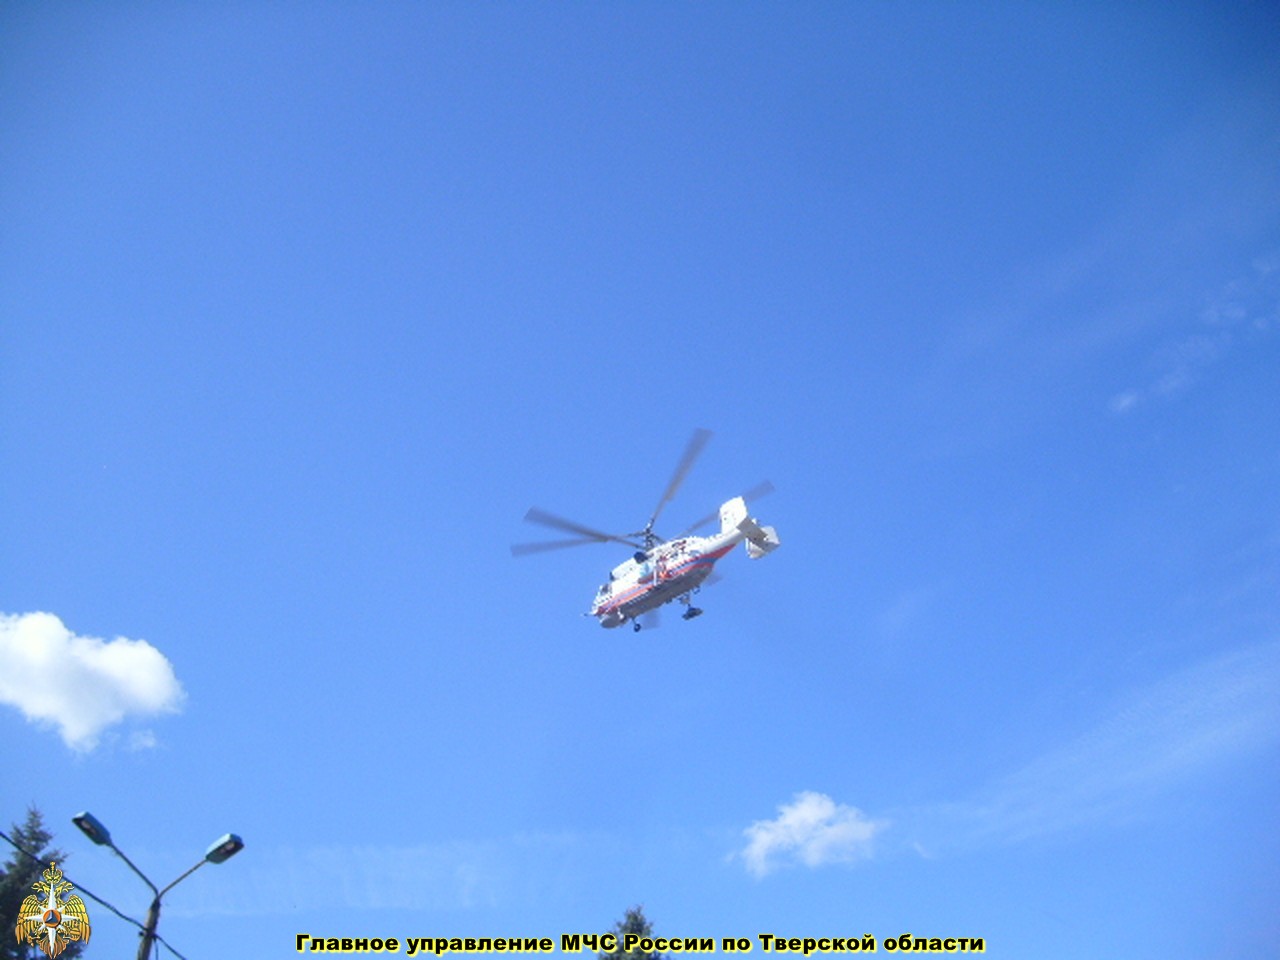 Санитарный вылет вертолета КА-32А в ЦРБ п. Максатиха